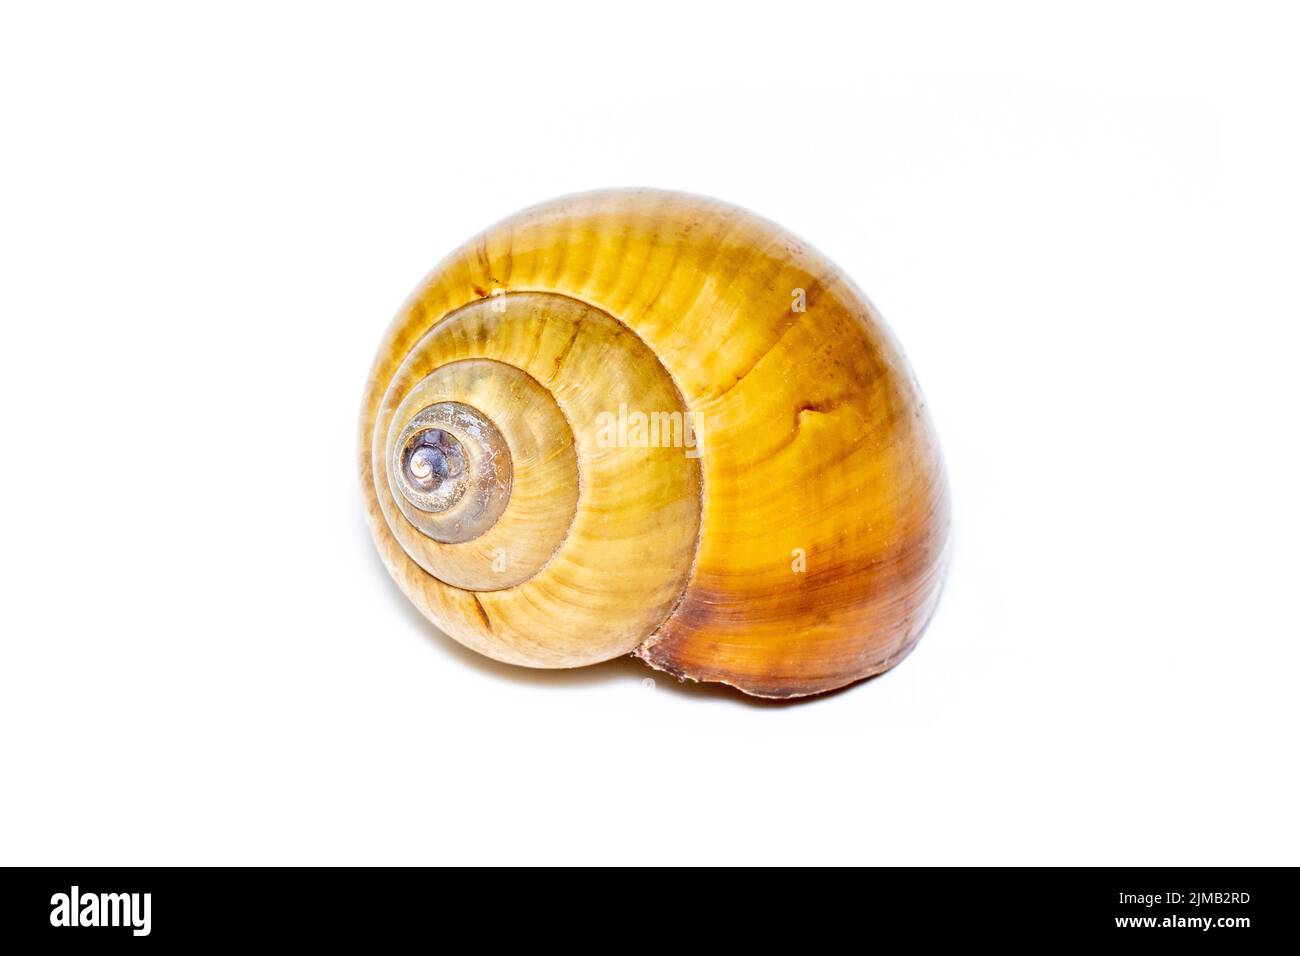 Immagine di una conchiglia marina a spirale marrone su sfondo bianco. Animali sottomarini. Conchiglie marine. Foto Stock